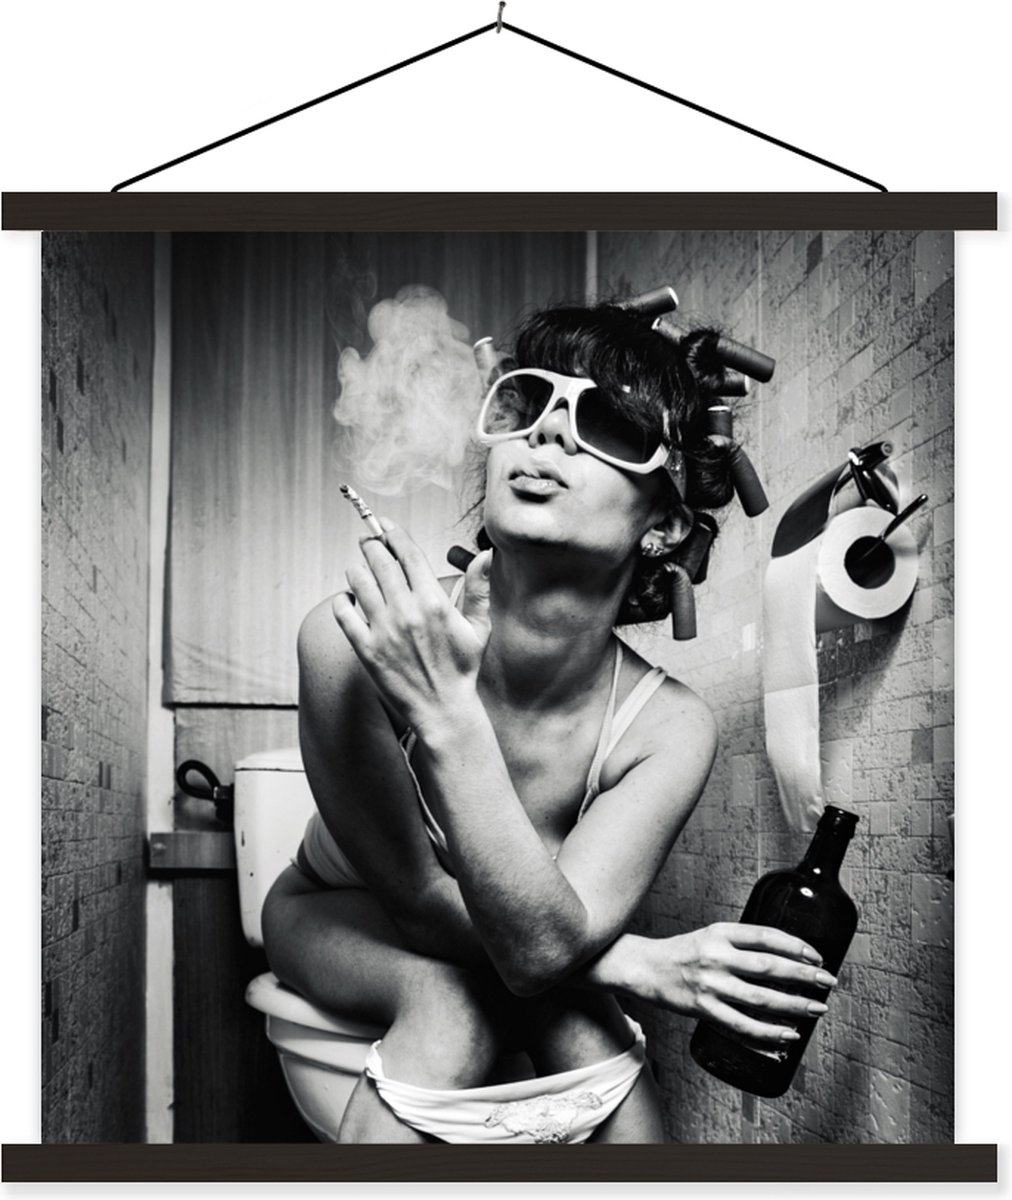 Affiche avec cadre Femme - Toilettes - Zwart - Wit - 40x40 cm